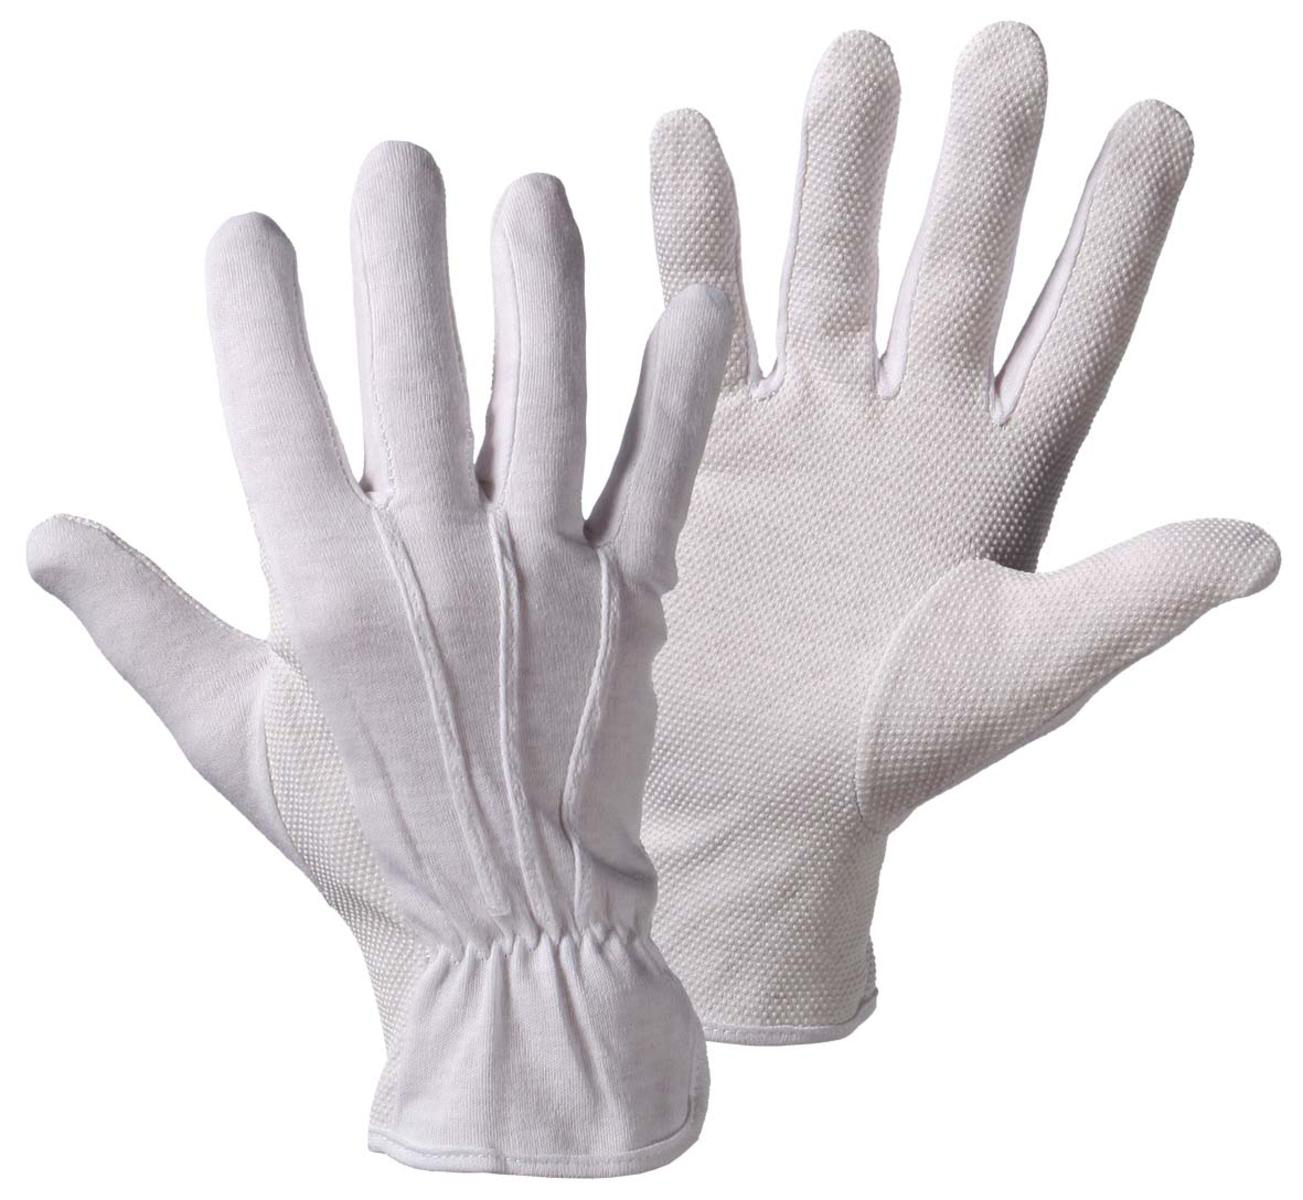 Handschuhe Trikot-Dot weiß gebleicht Gr. 10